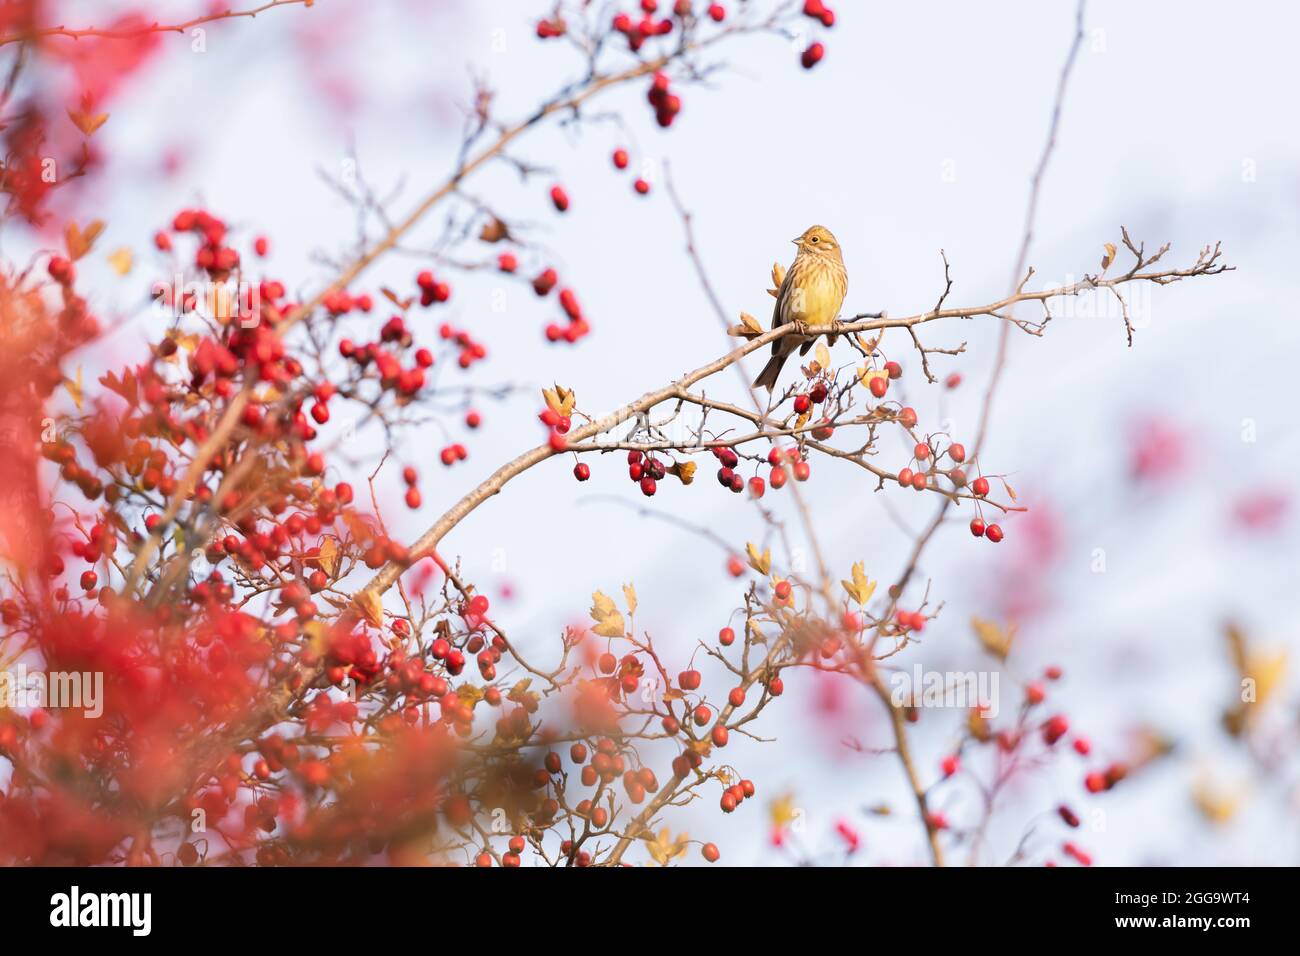 Uccello giallo che mangia bacche su cespuglio rosso in autunno. Fotografia di uccelli Foto Stock